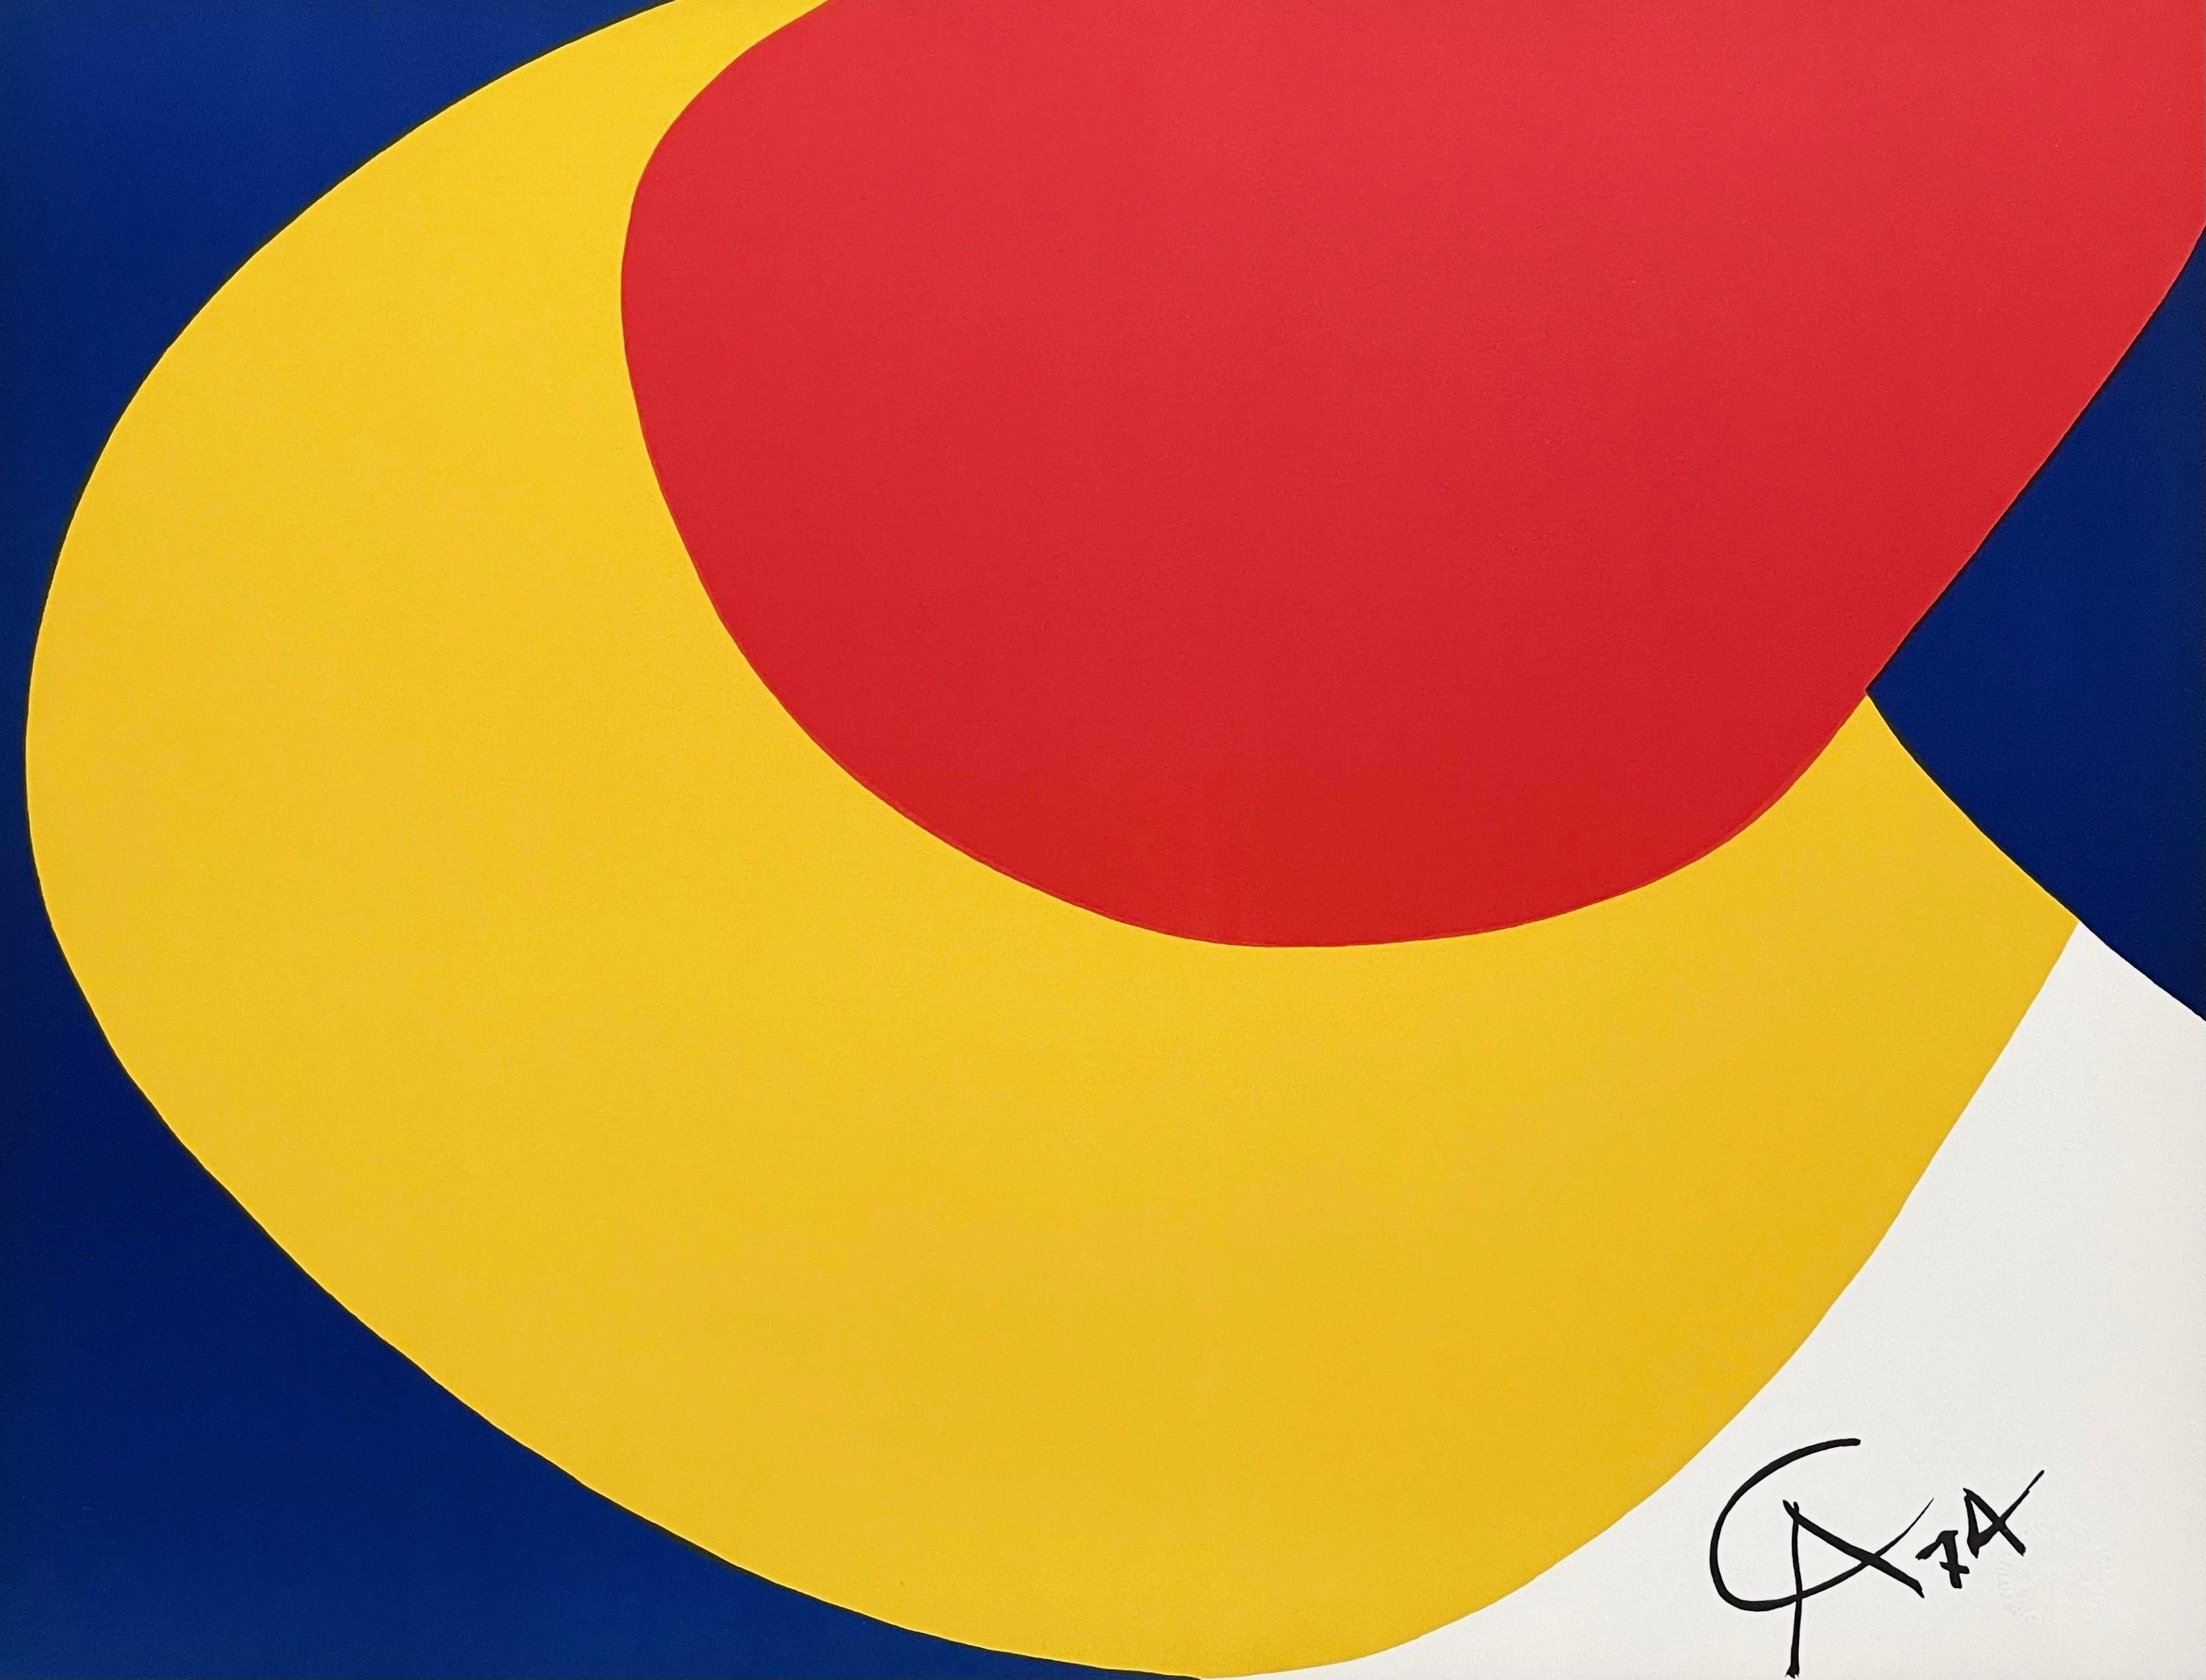 Konvection, Braniff Flying Colors suite, Alexander Calder